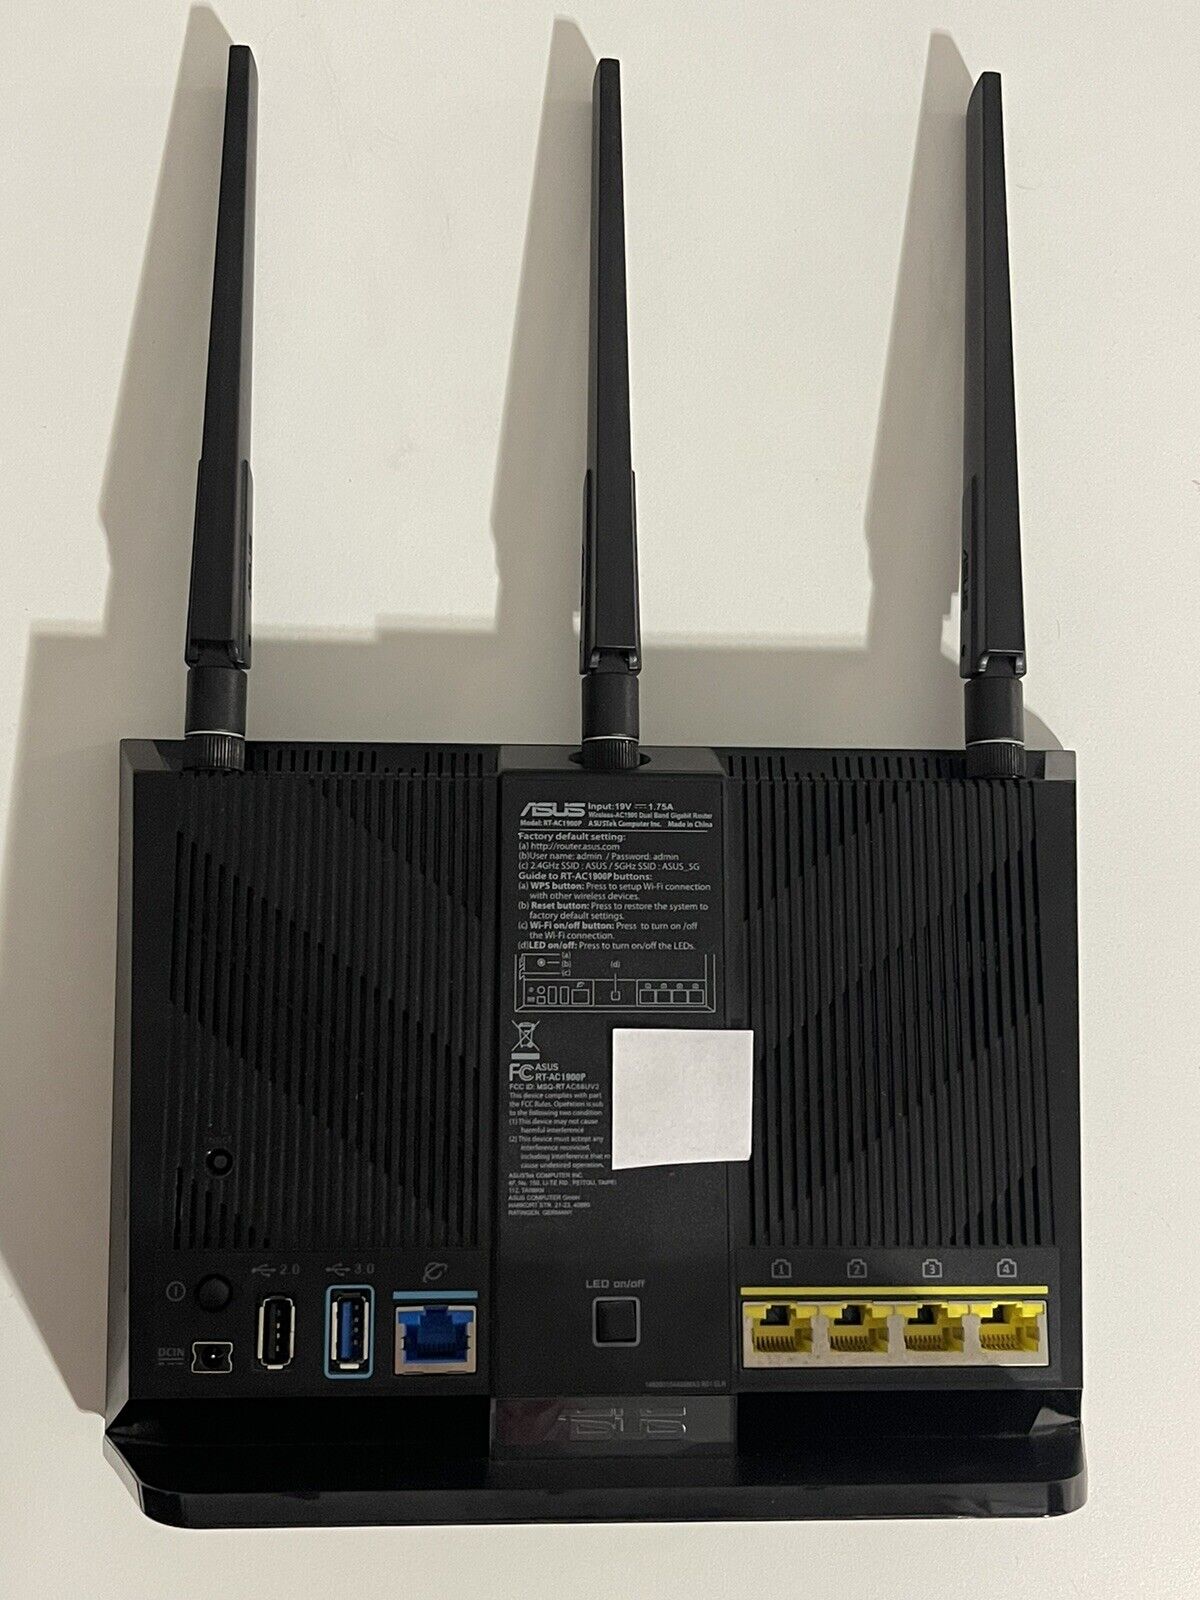 ASUS AC1900 (RT-AC1900P) 802.11ac Gigabit AiMesh WiFi Router / Access Point